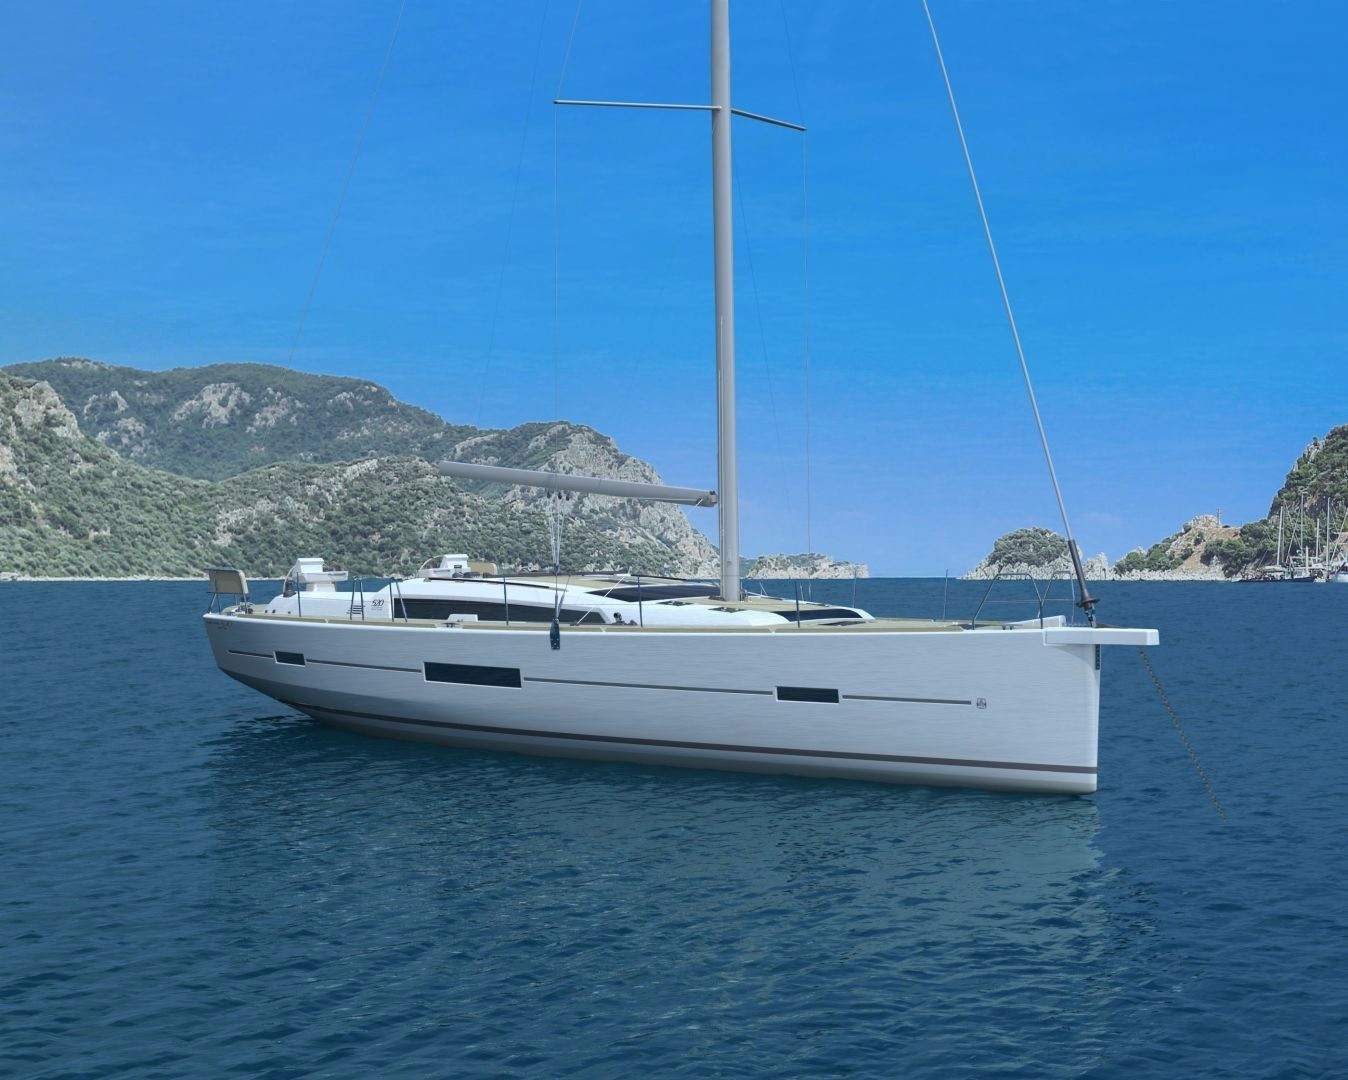 Dufour 520 GL - Yacht Charter Ajaccio & Boat hire in France Corsica South Corsica Ajaccio Port Tino Rossi 1